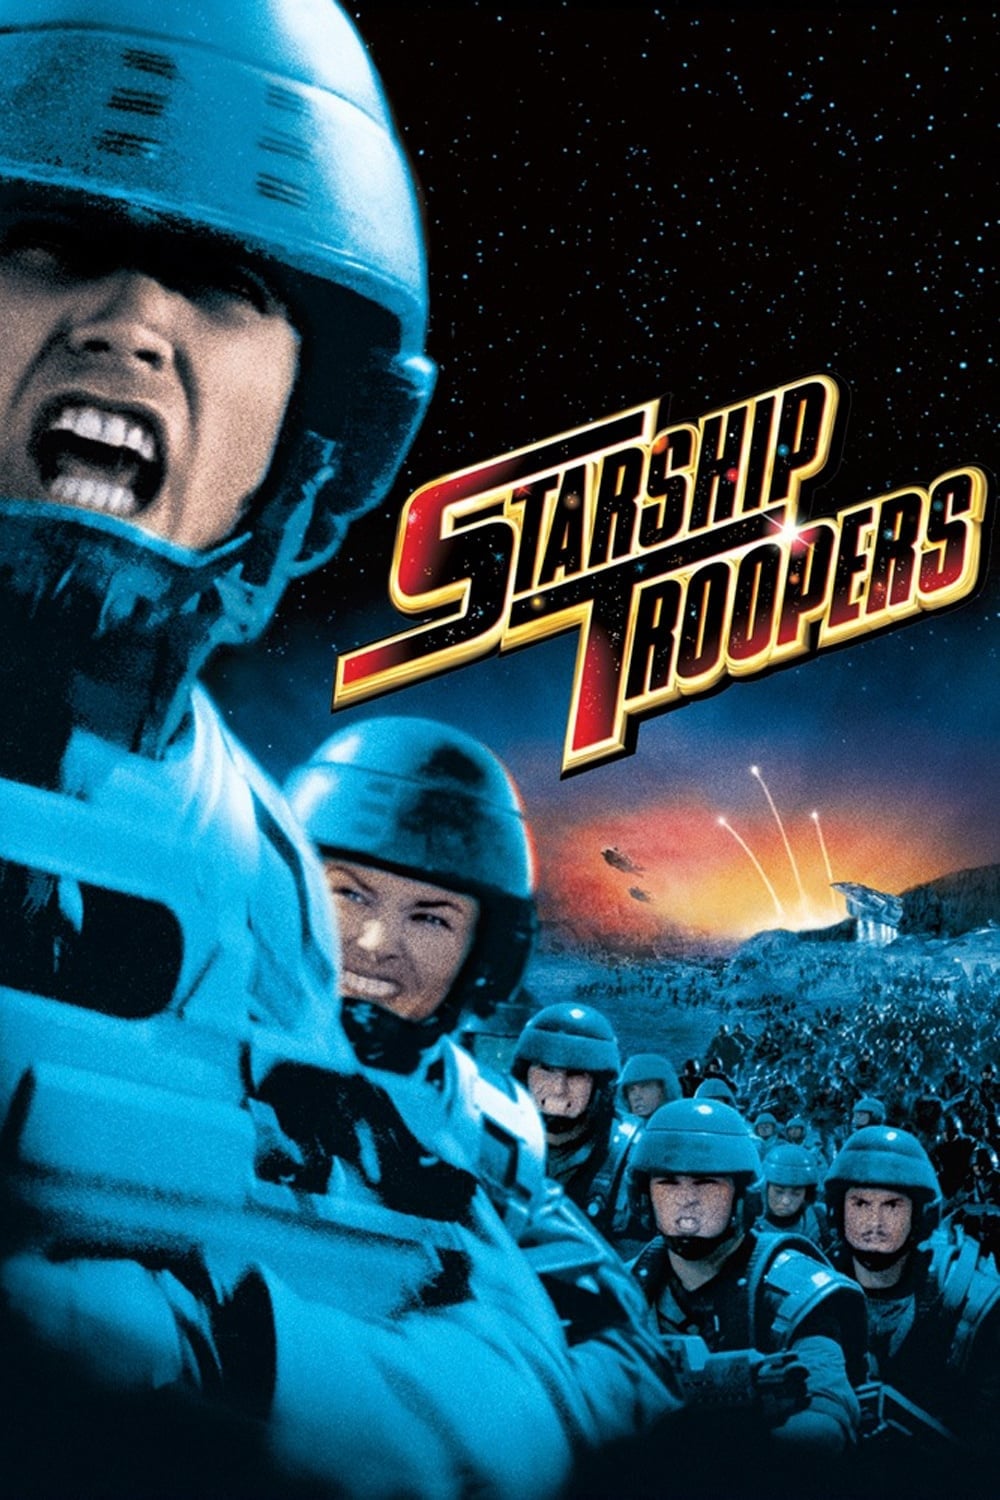 Chiến Binh Tàu Không Gian: Nhện Khổng Lồ (Starship Troopers) [1997]